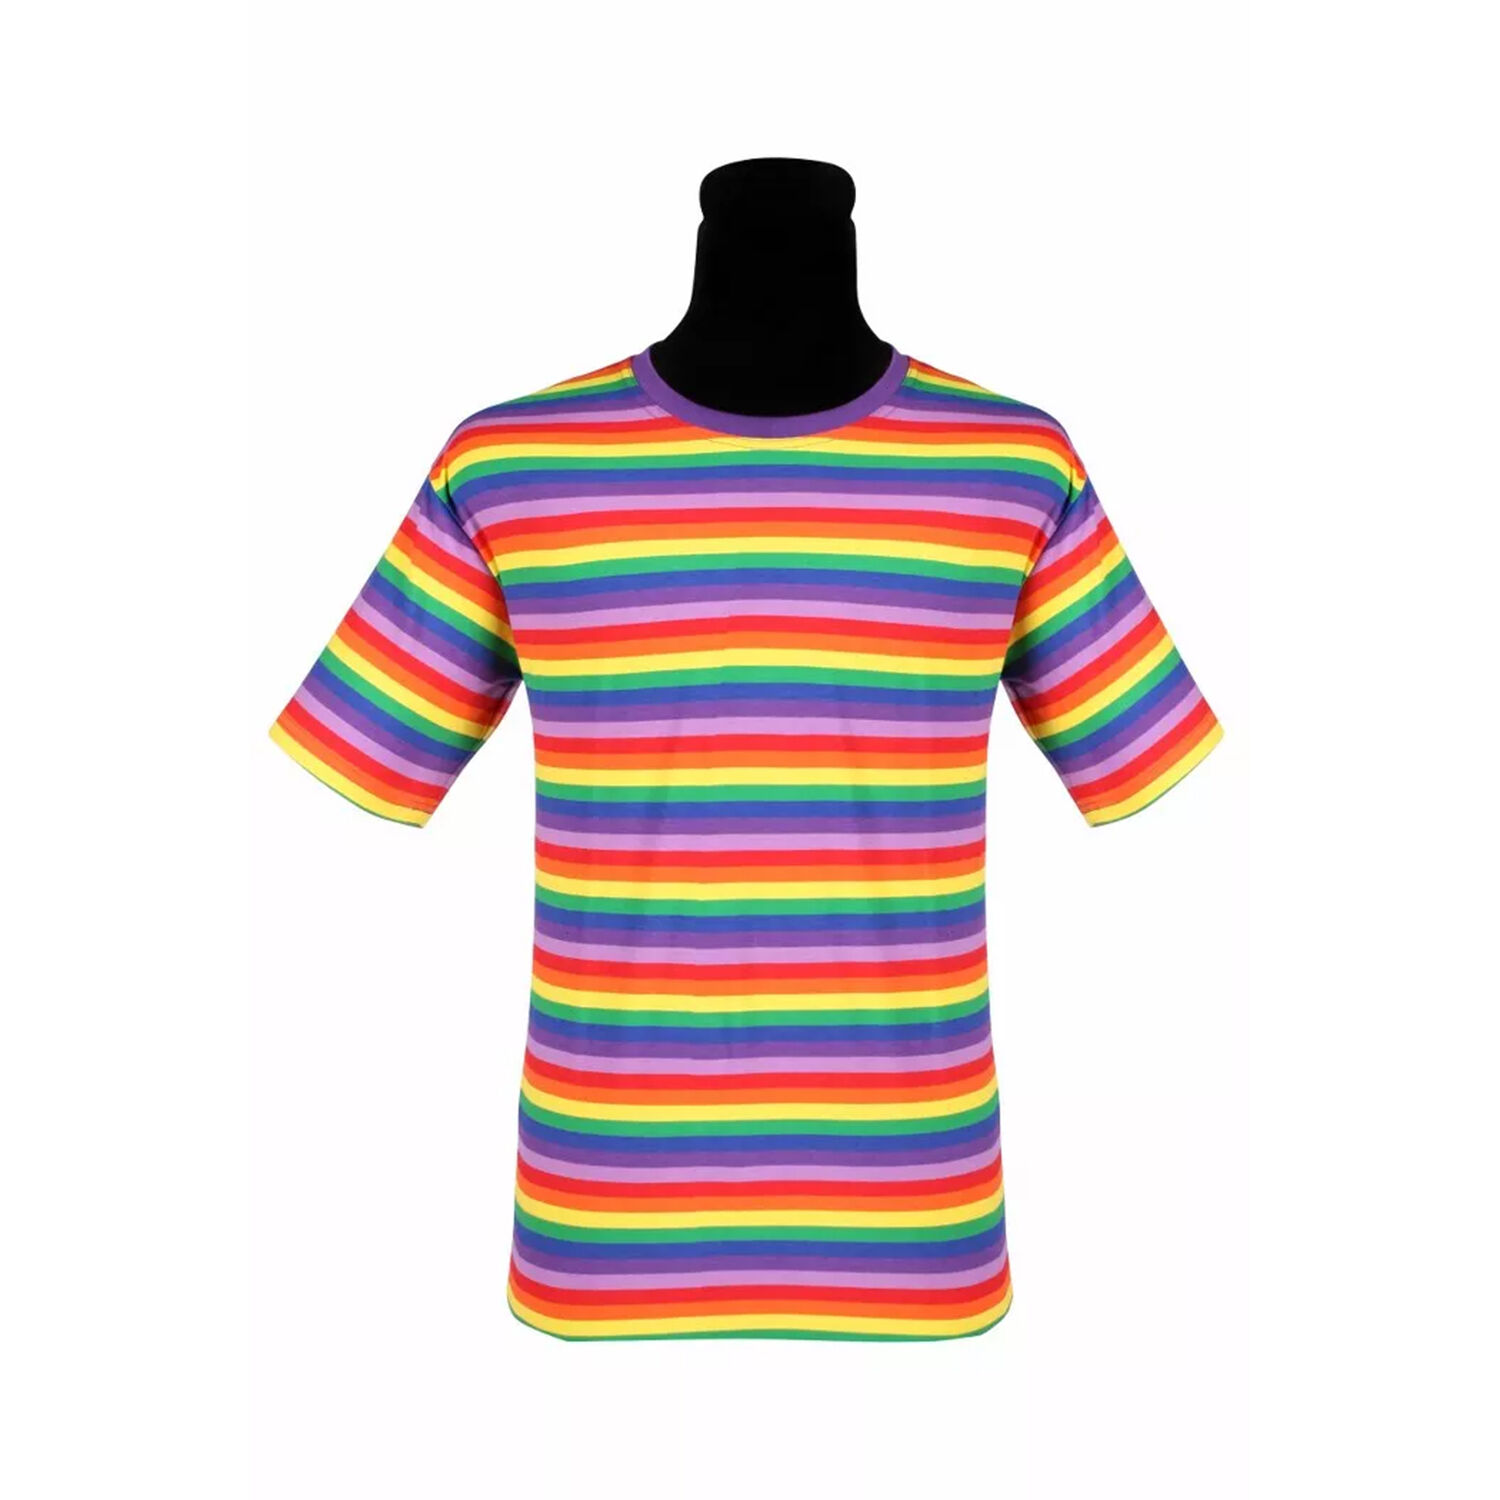 NEU Herren-Kostüm Ringelshirt kurzarm, regenbogenfarben, bunt, Größe: XS